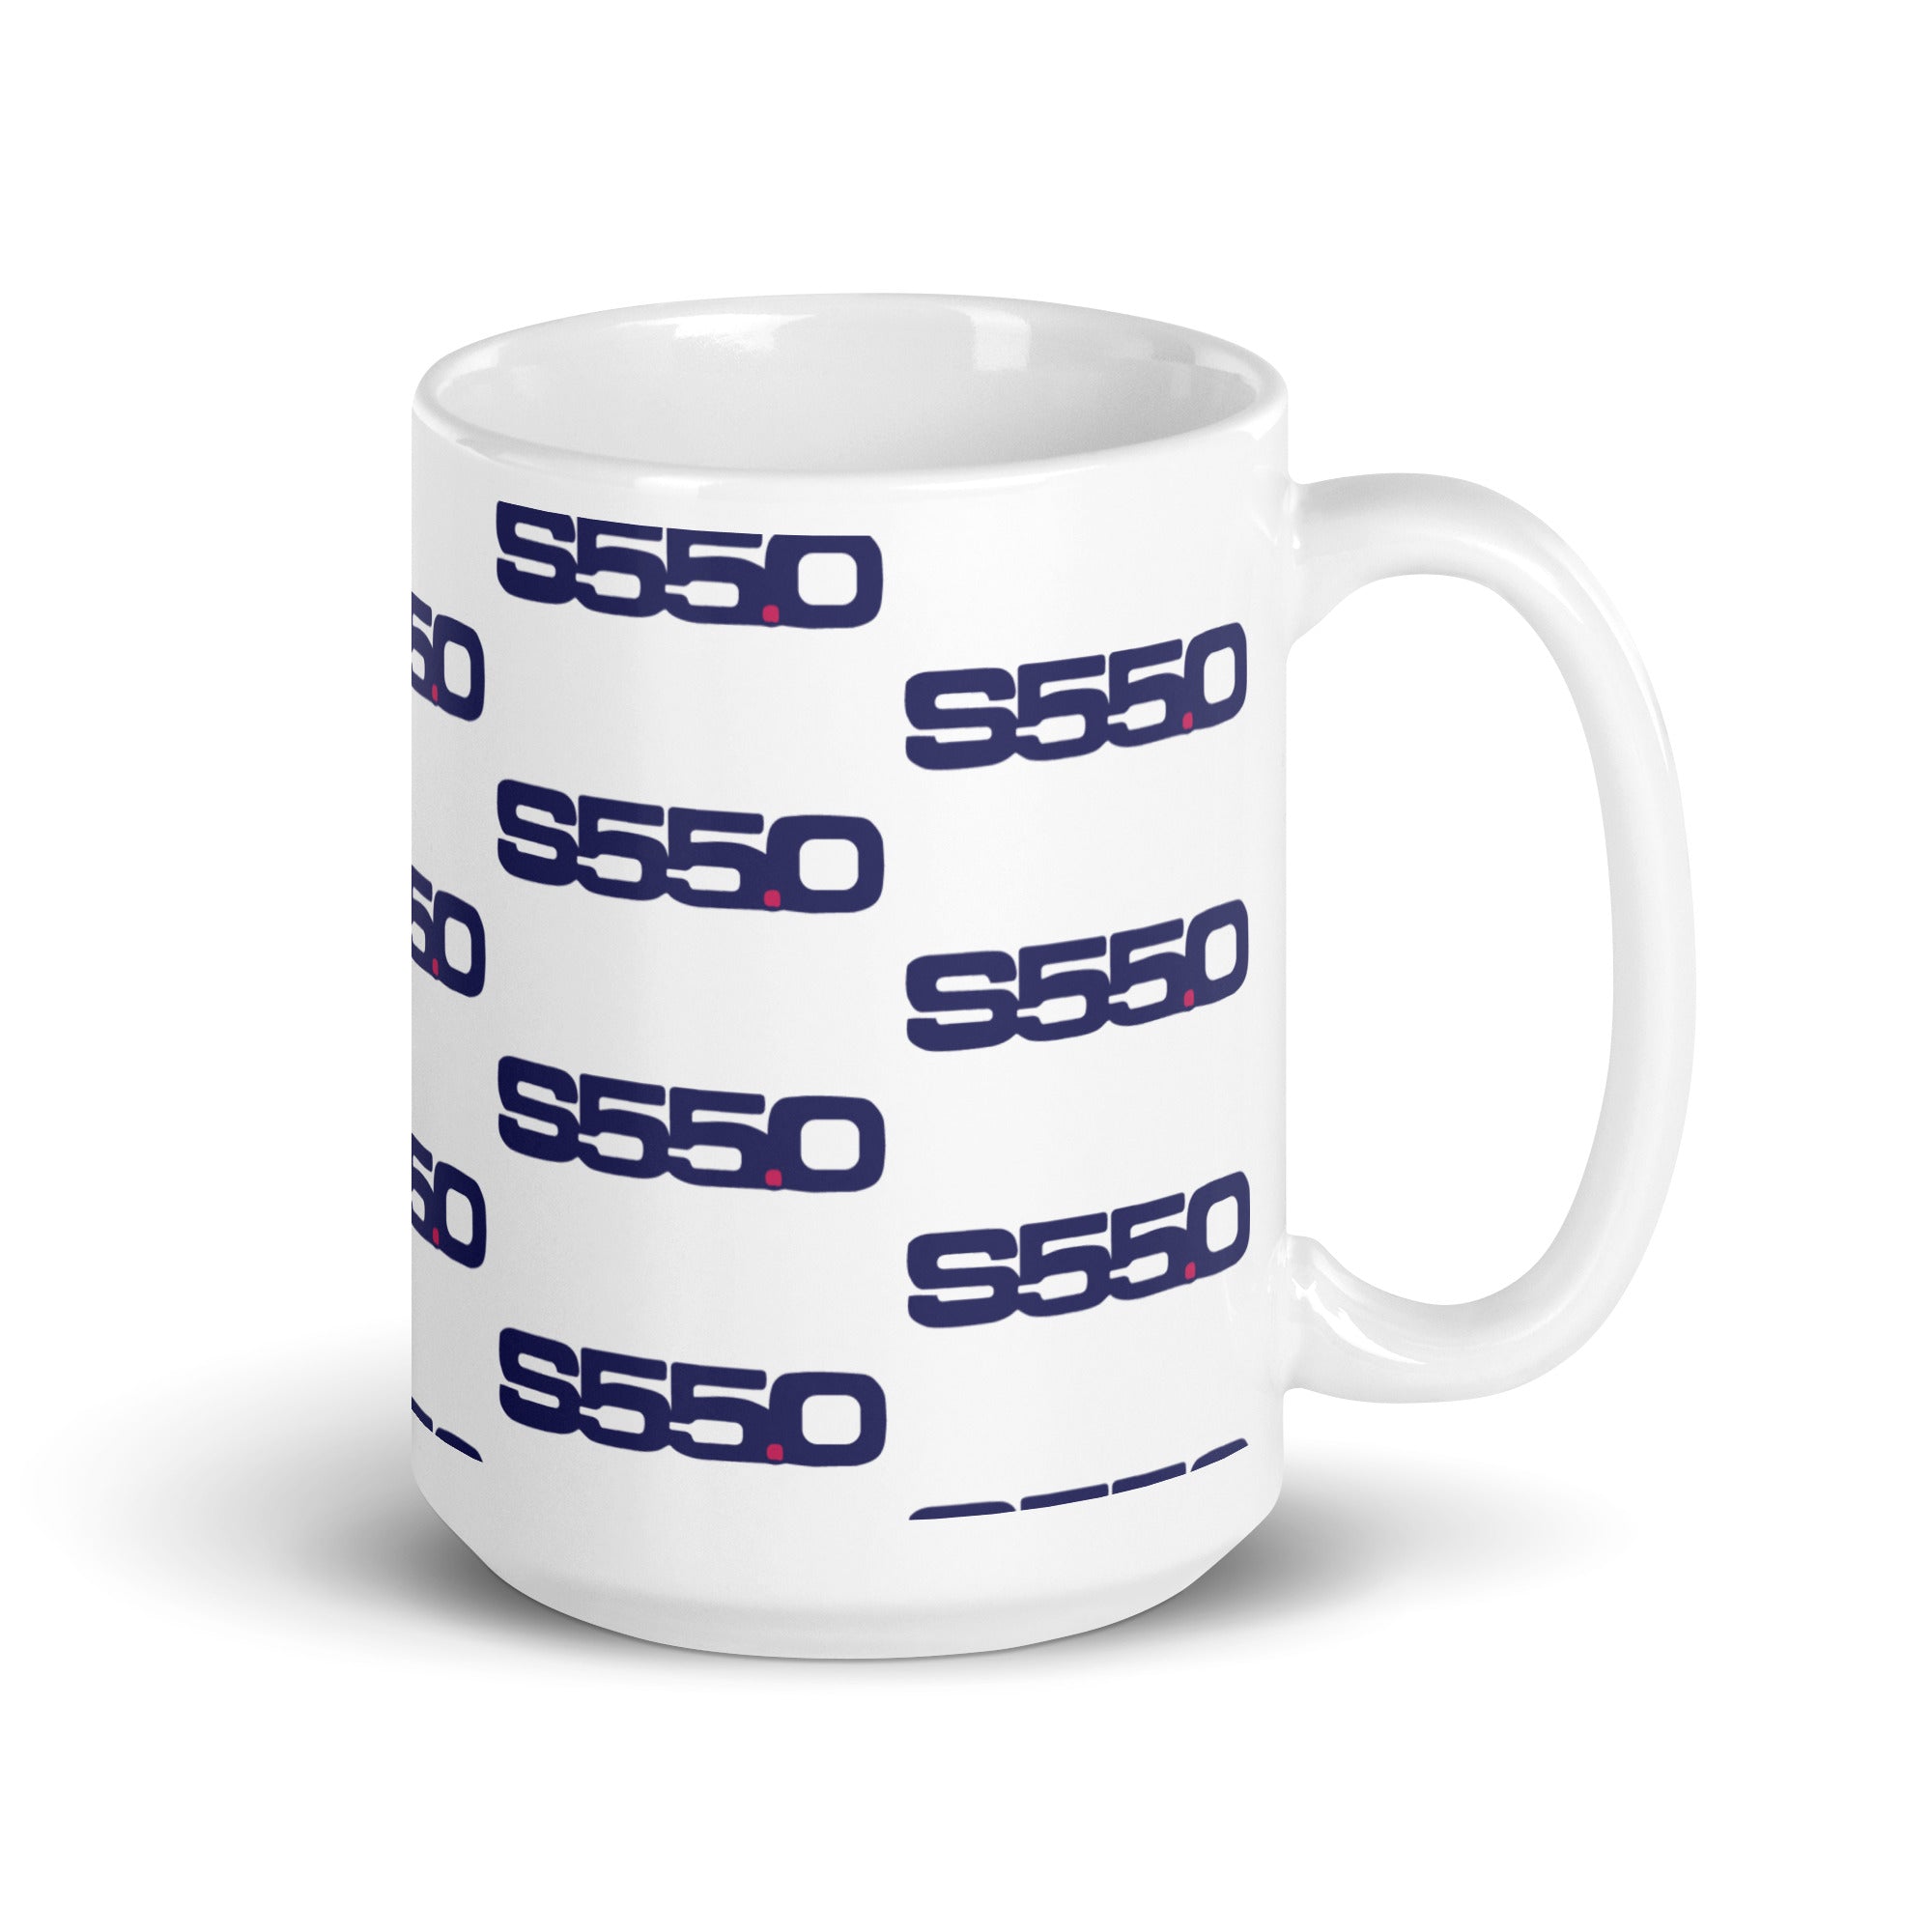 S55.0 White glossy mug